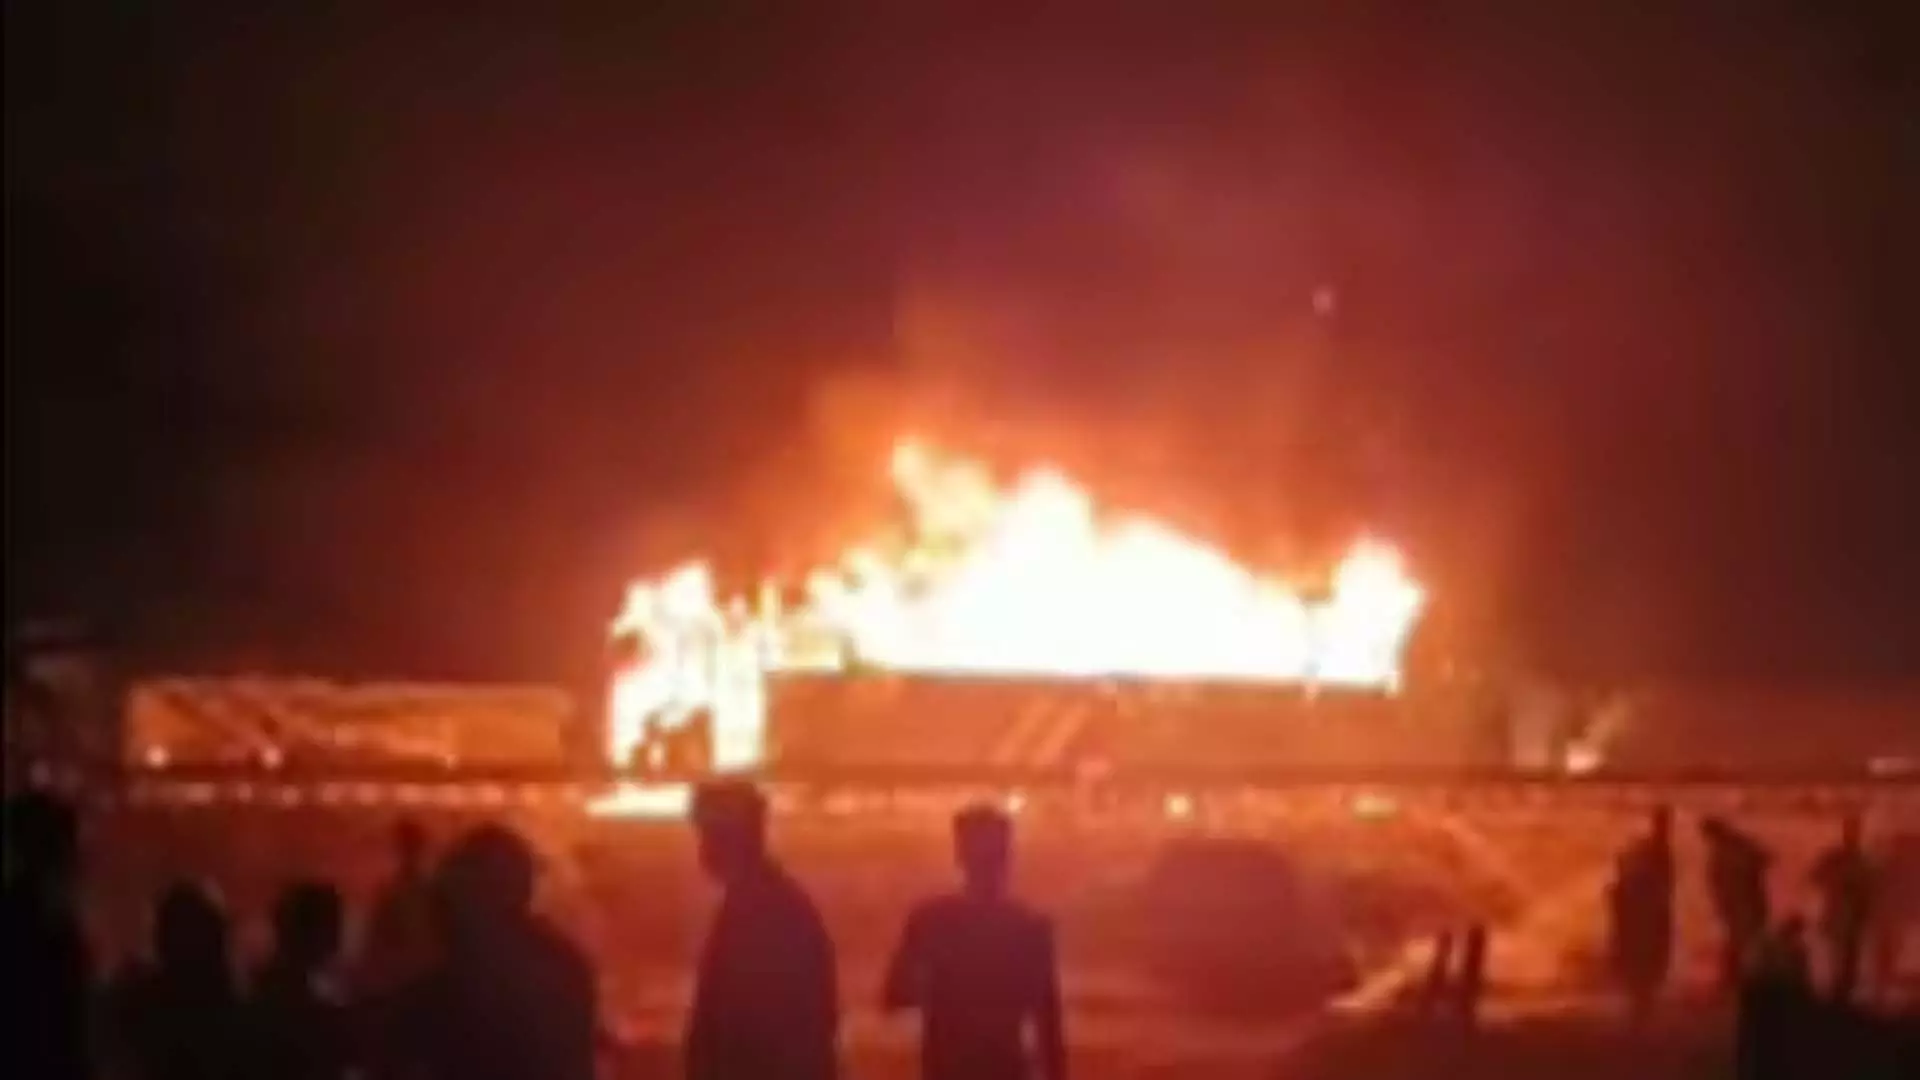 हरियाणा के नूंह में तीर्थयात्रियों को ले जा रही बस में आग लगने से 9 की मौत